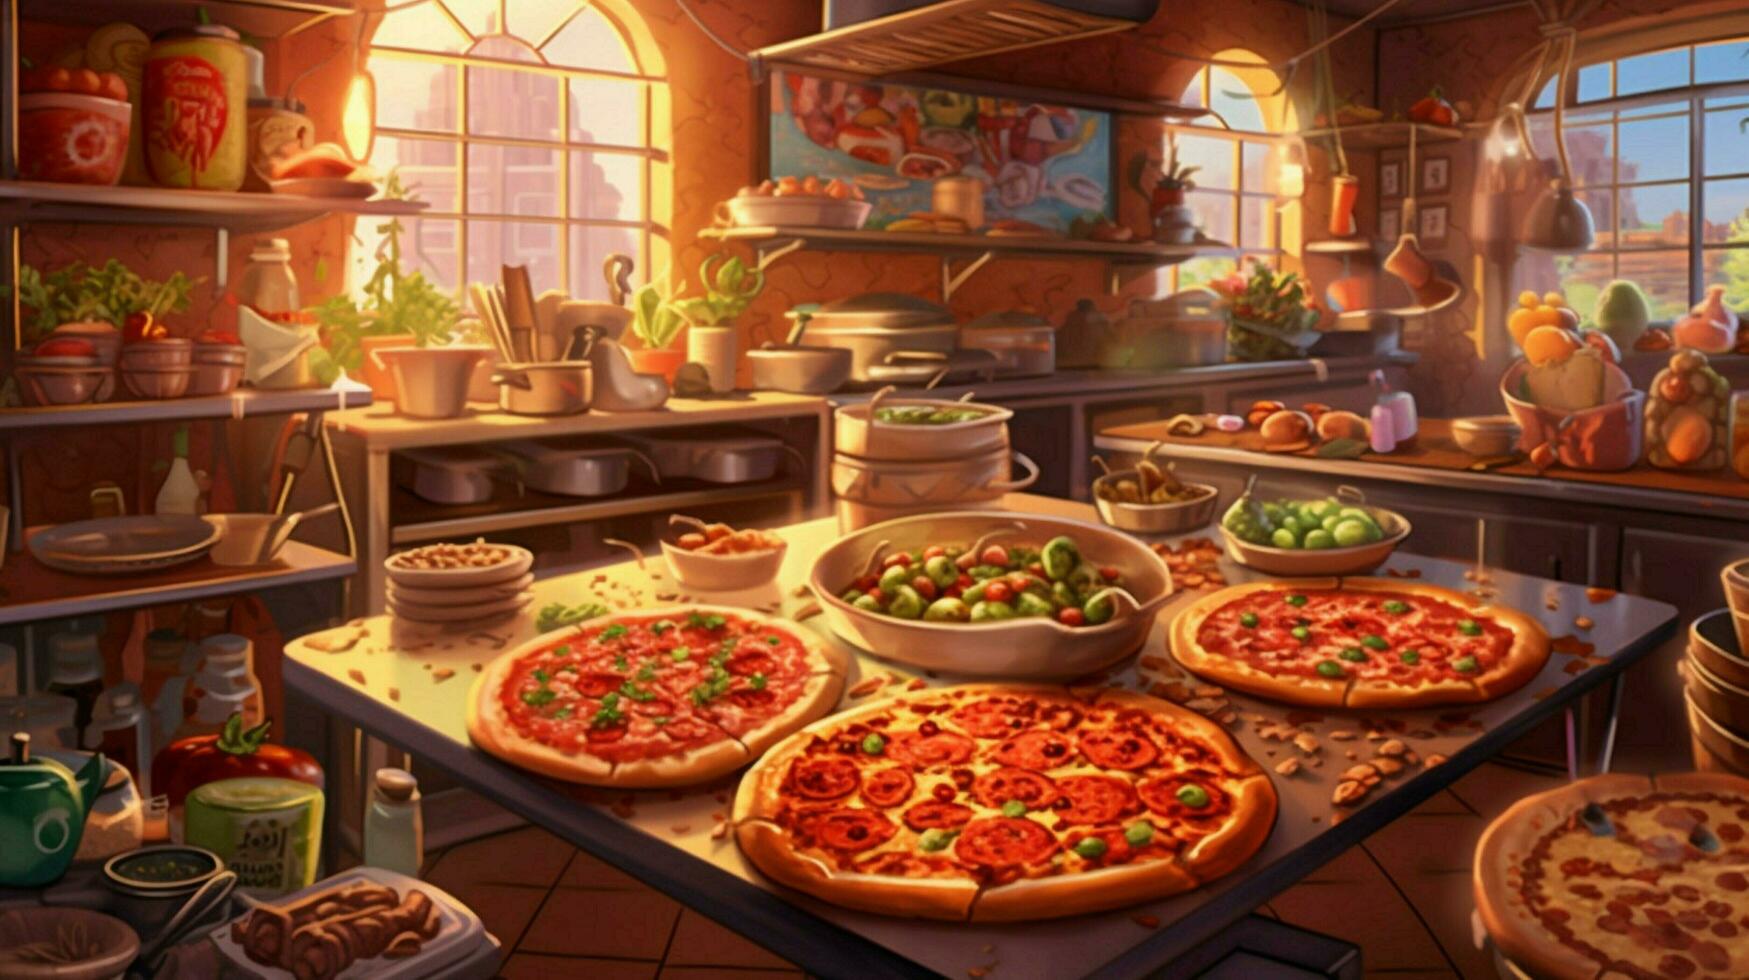 pizzeria med mängd av pizzor och pålägg foto